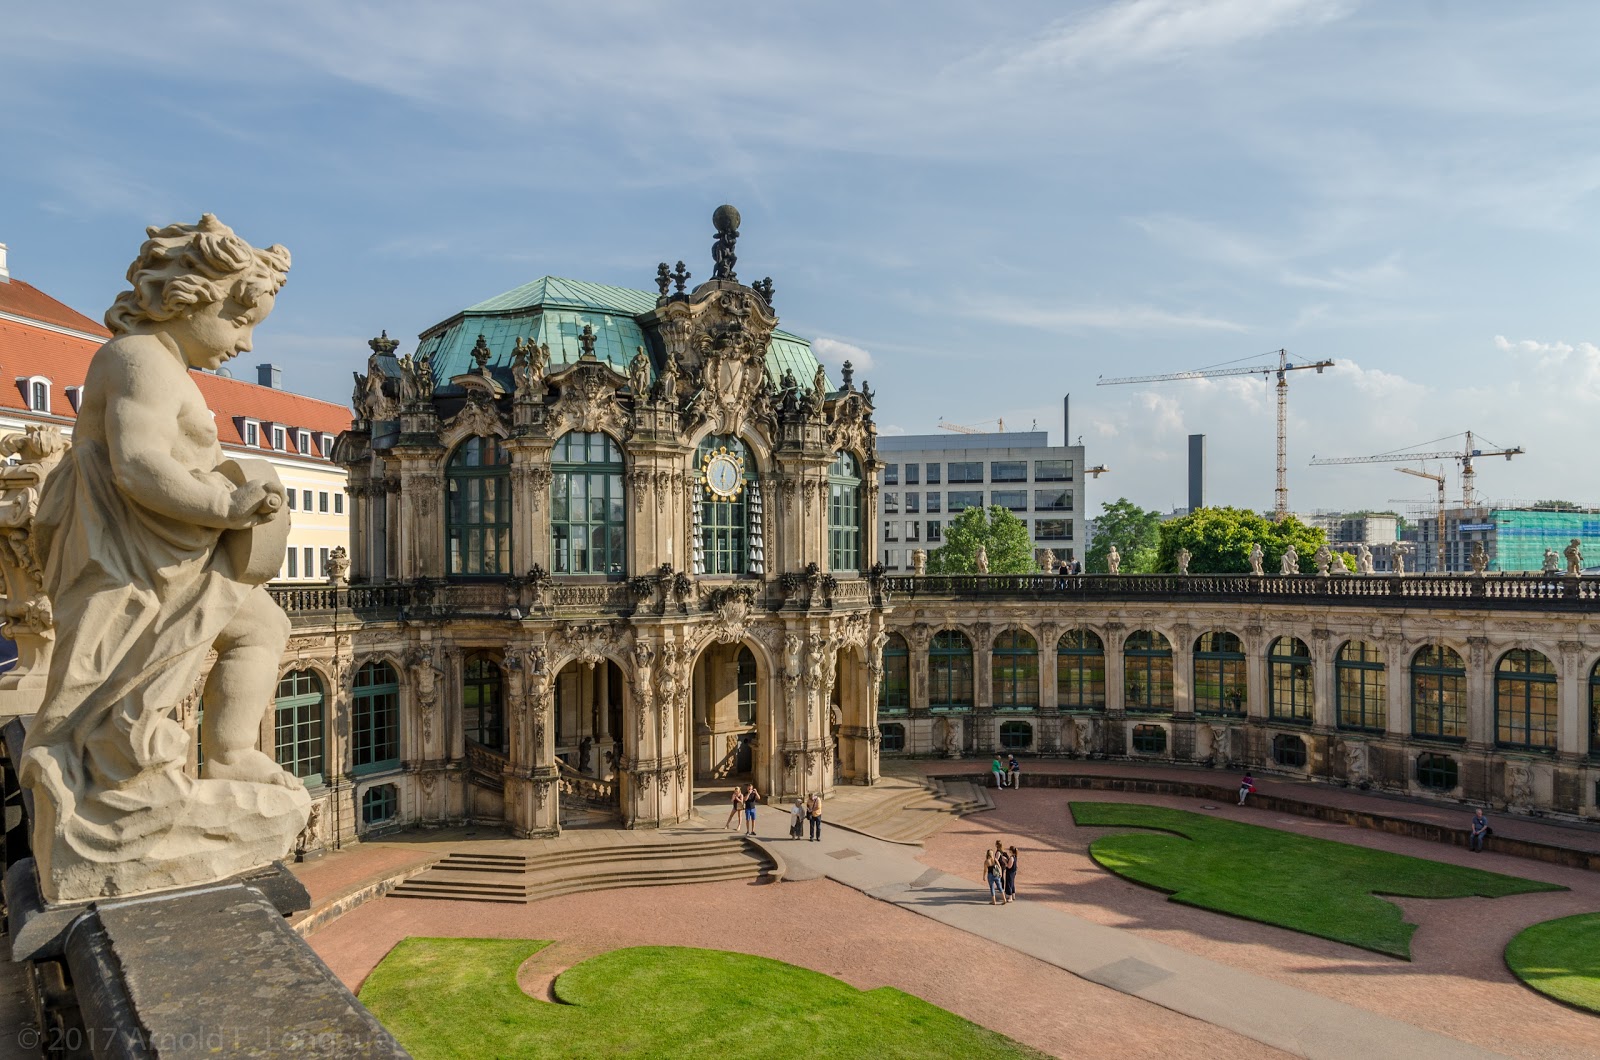 The Dresden Zwinger